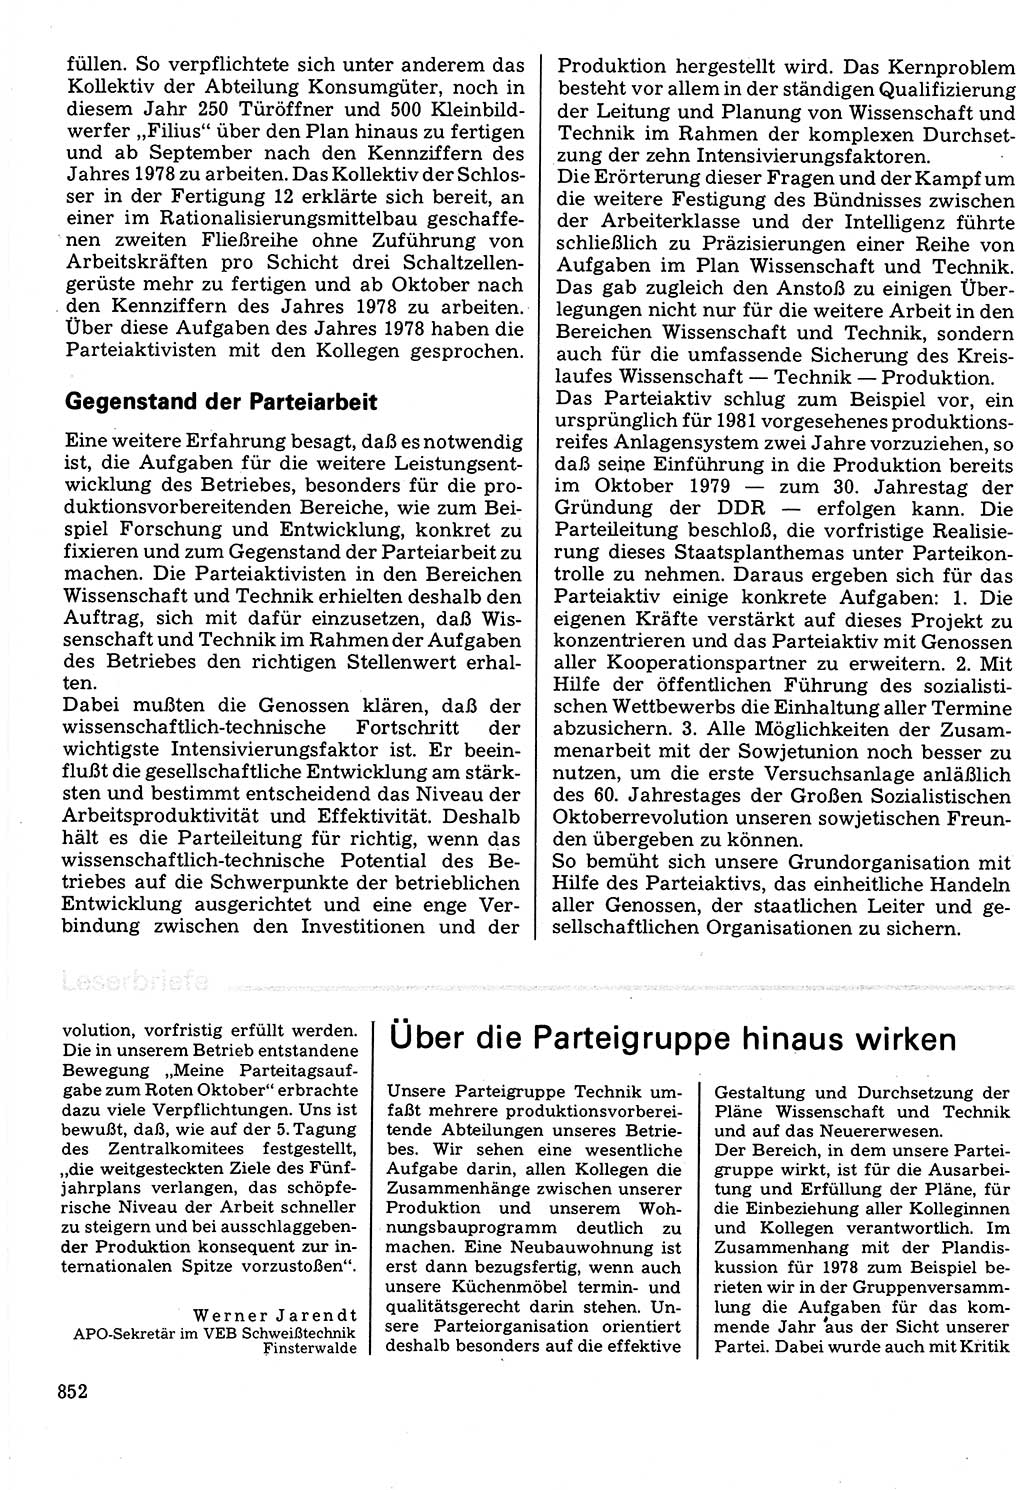 Neuer Weg (NW), Organ des Zentralkomitees (ZK) der SED (Sozialistische Einheitspartei Deutschlands) für Fragen des Parteilebens, 32. Jahrgang [Deutsche Demokratische Republik (DDR)] 1977, Seite 852 (NW ZK SED DDR 1977, S. 852)